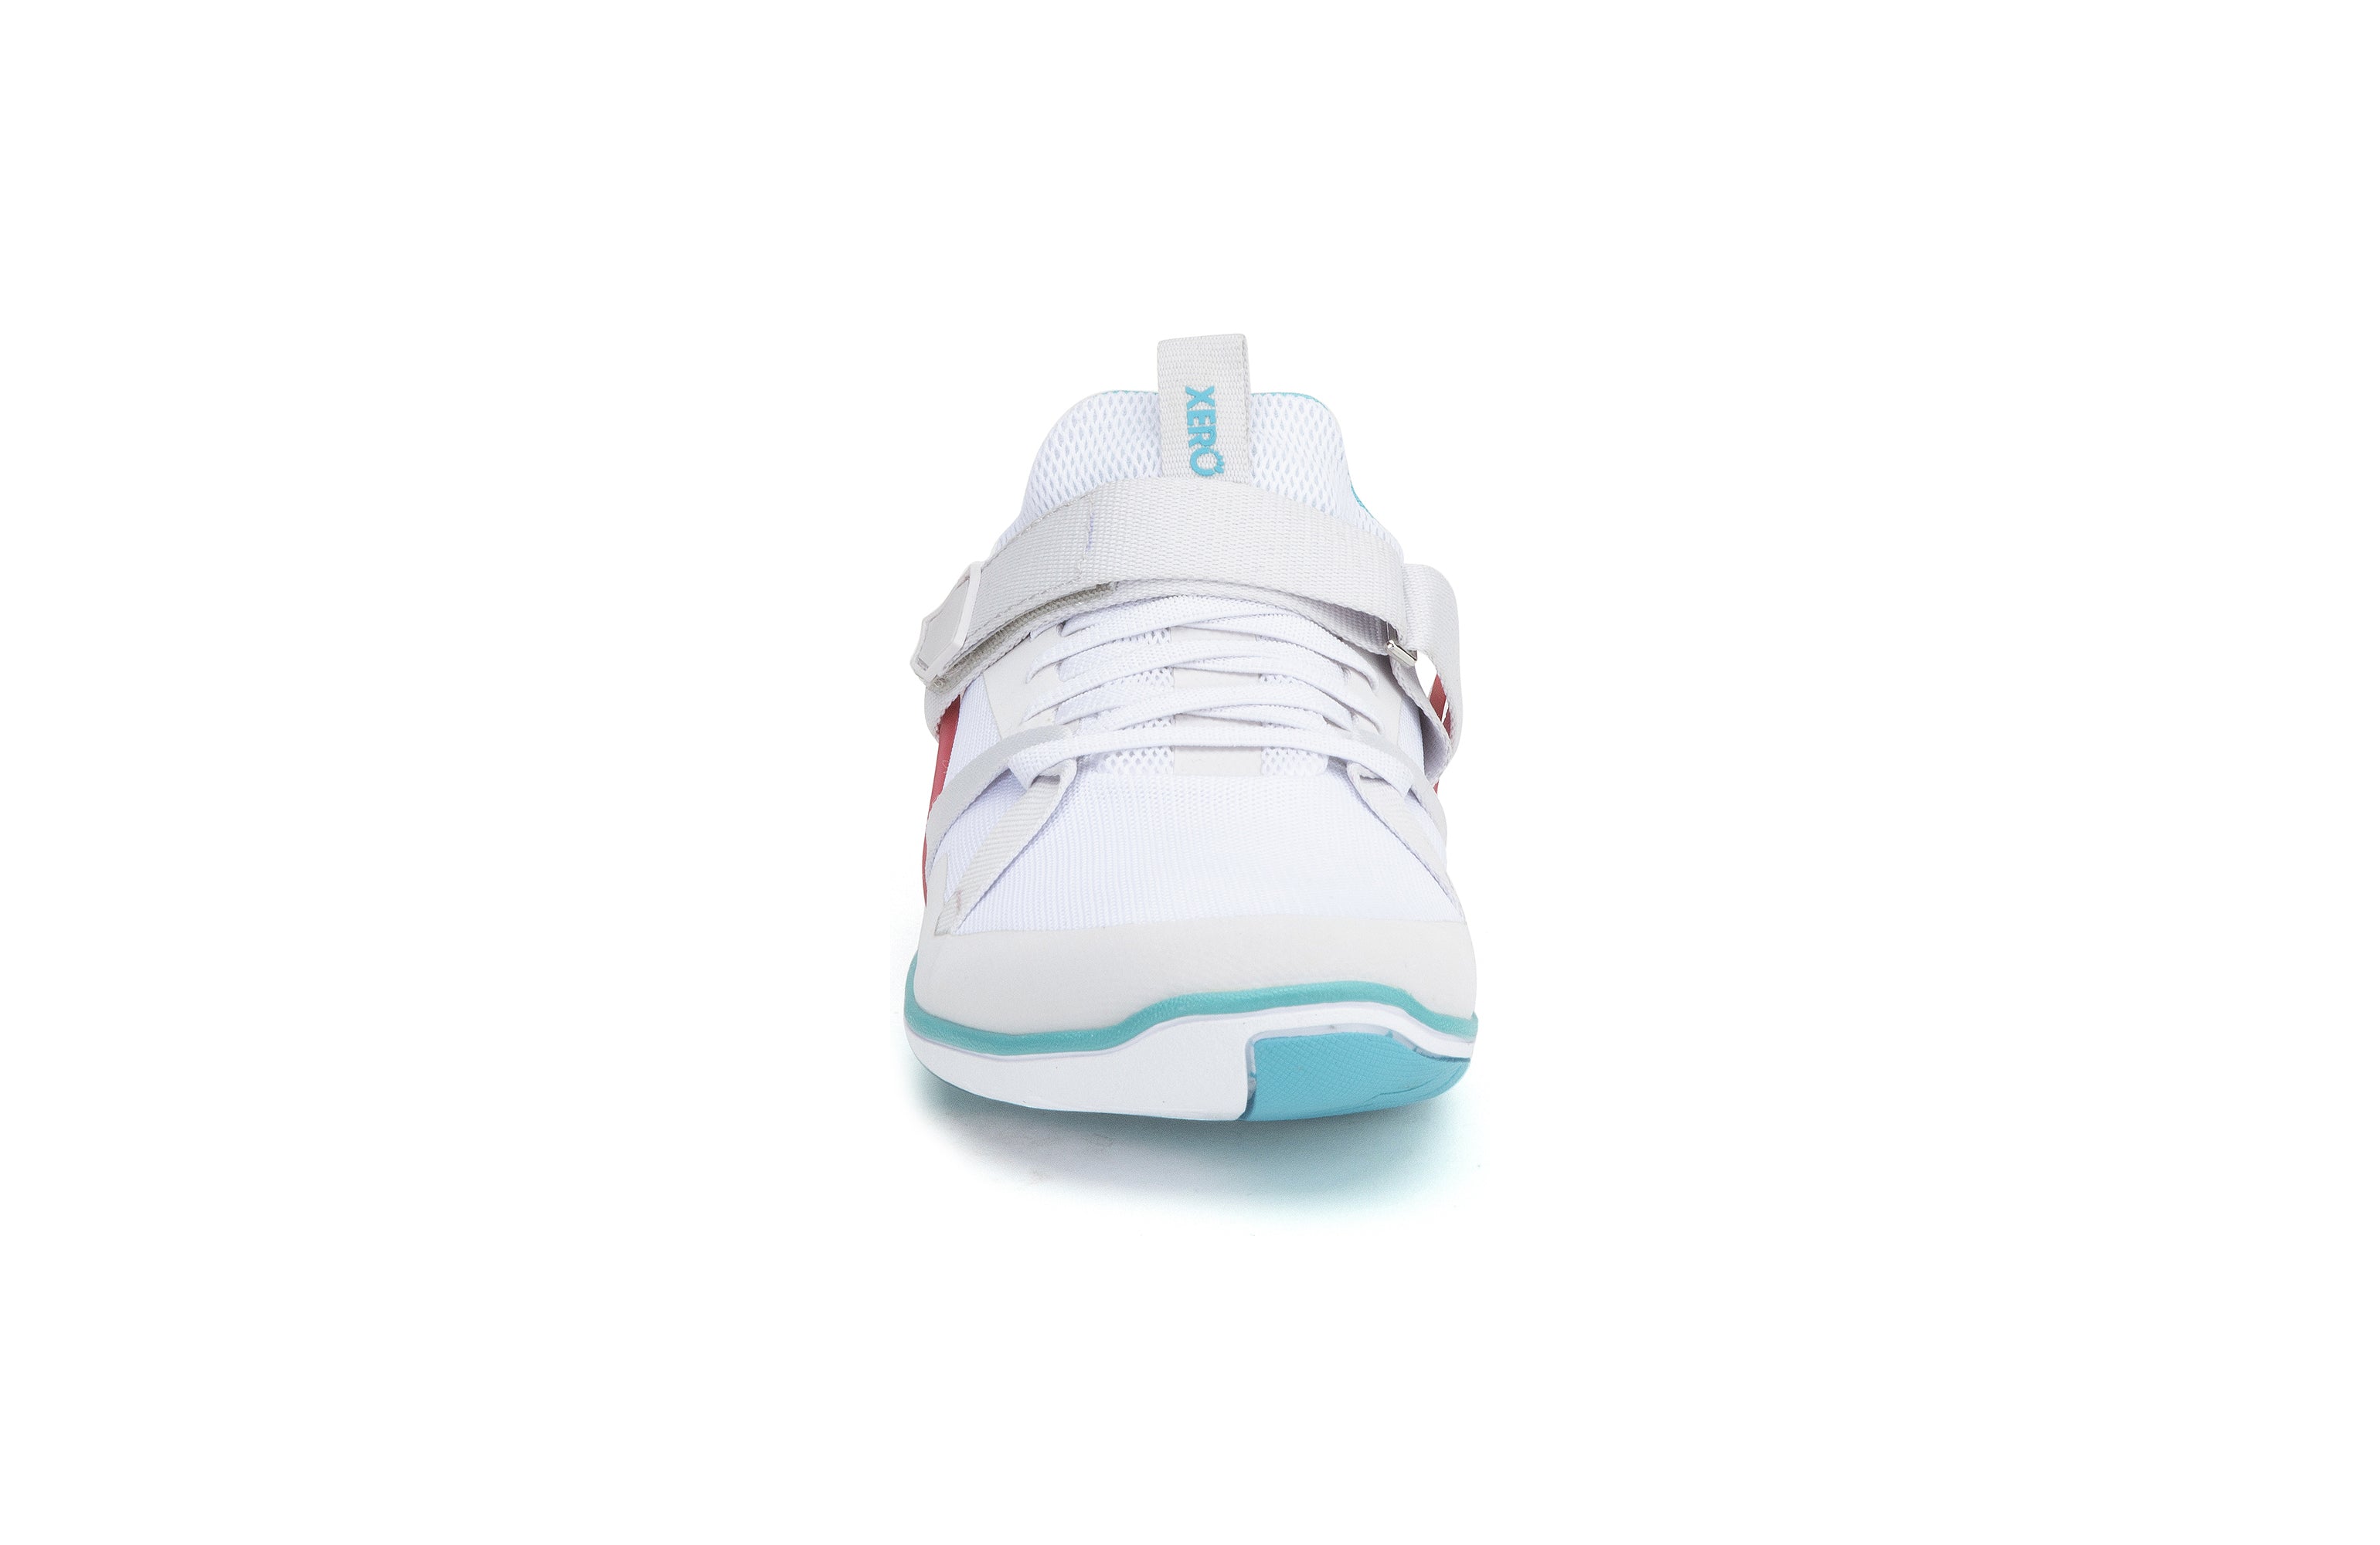 Xero Shoes Forza Trainer Womens barfods træningssko til kvinder i farven white / scuba blue, forfra